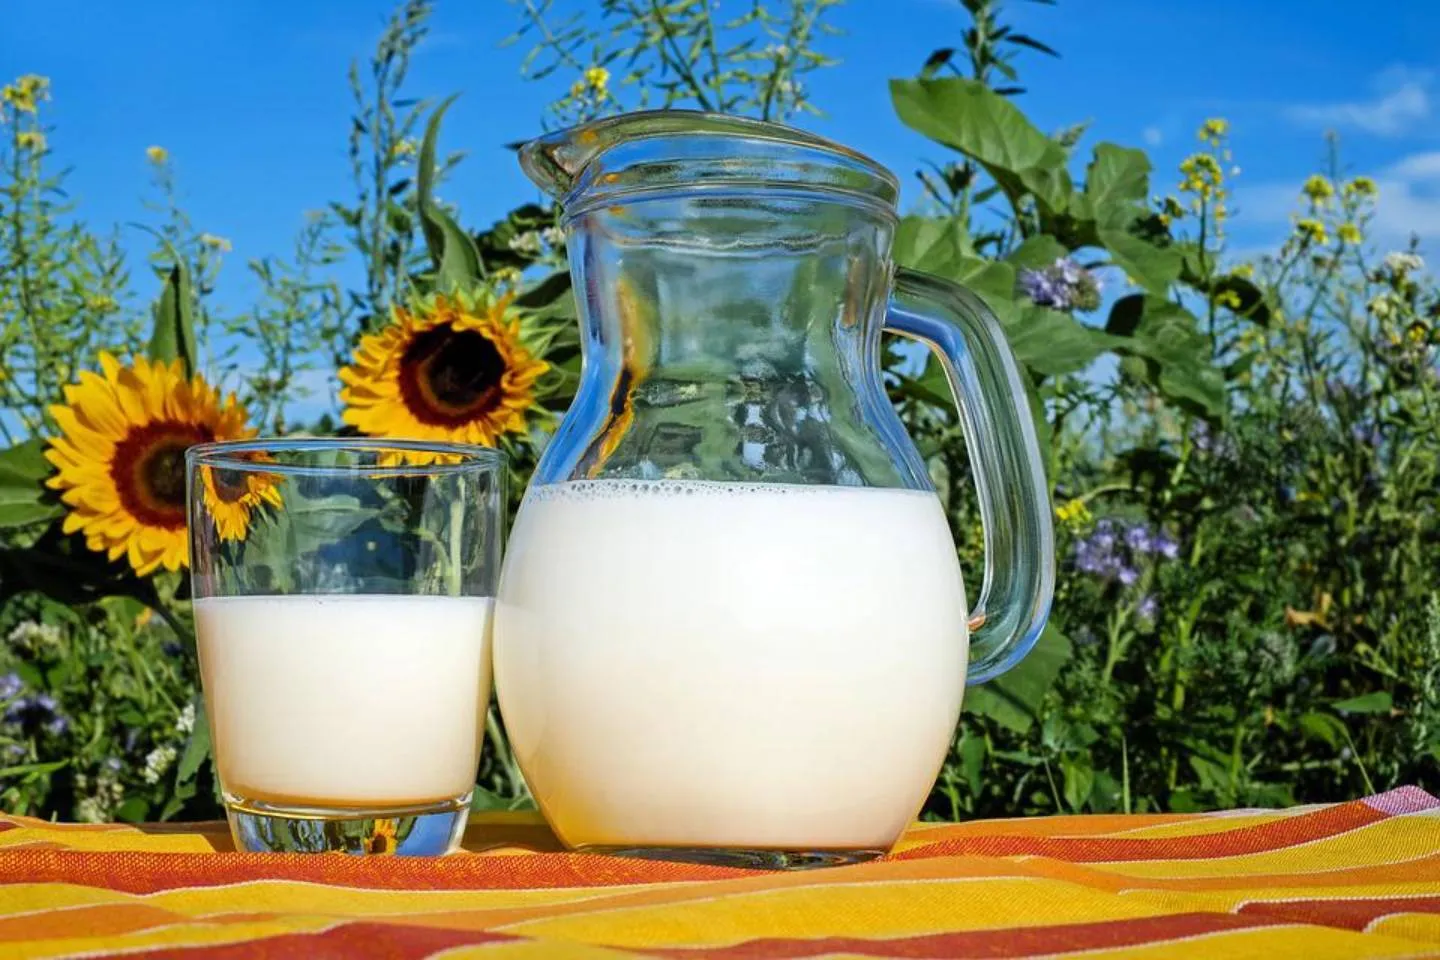 Новости Казахстана / Общество в Казахстане / В Казахстане наблюдается рост цен на молочные продукты